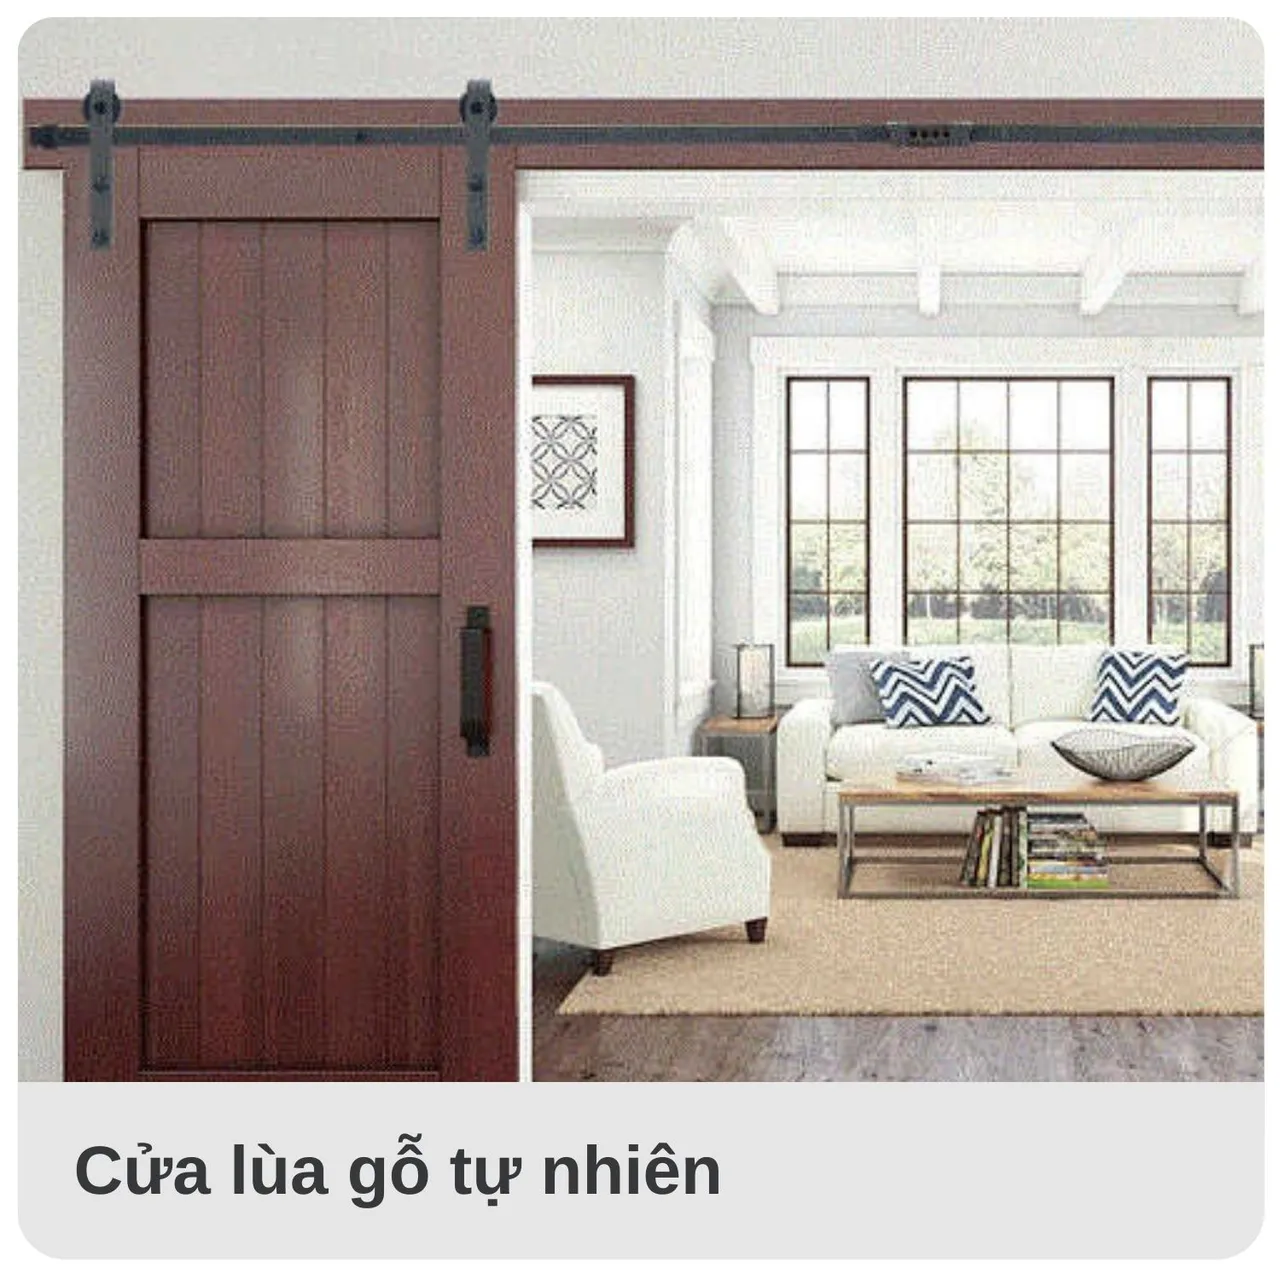 Mẫu cửa gỗ tự nhiên thiết kế theo phong cách cửa mở trượt (mở lùa)